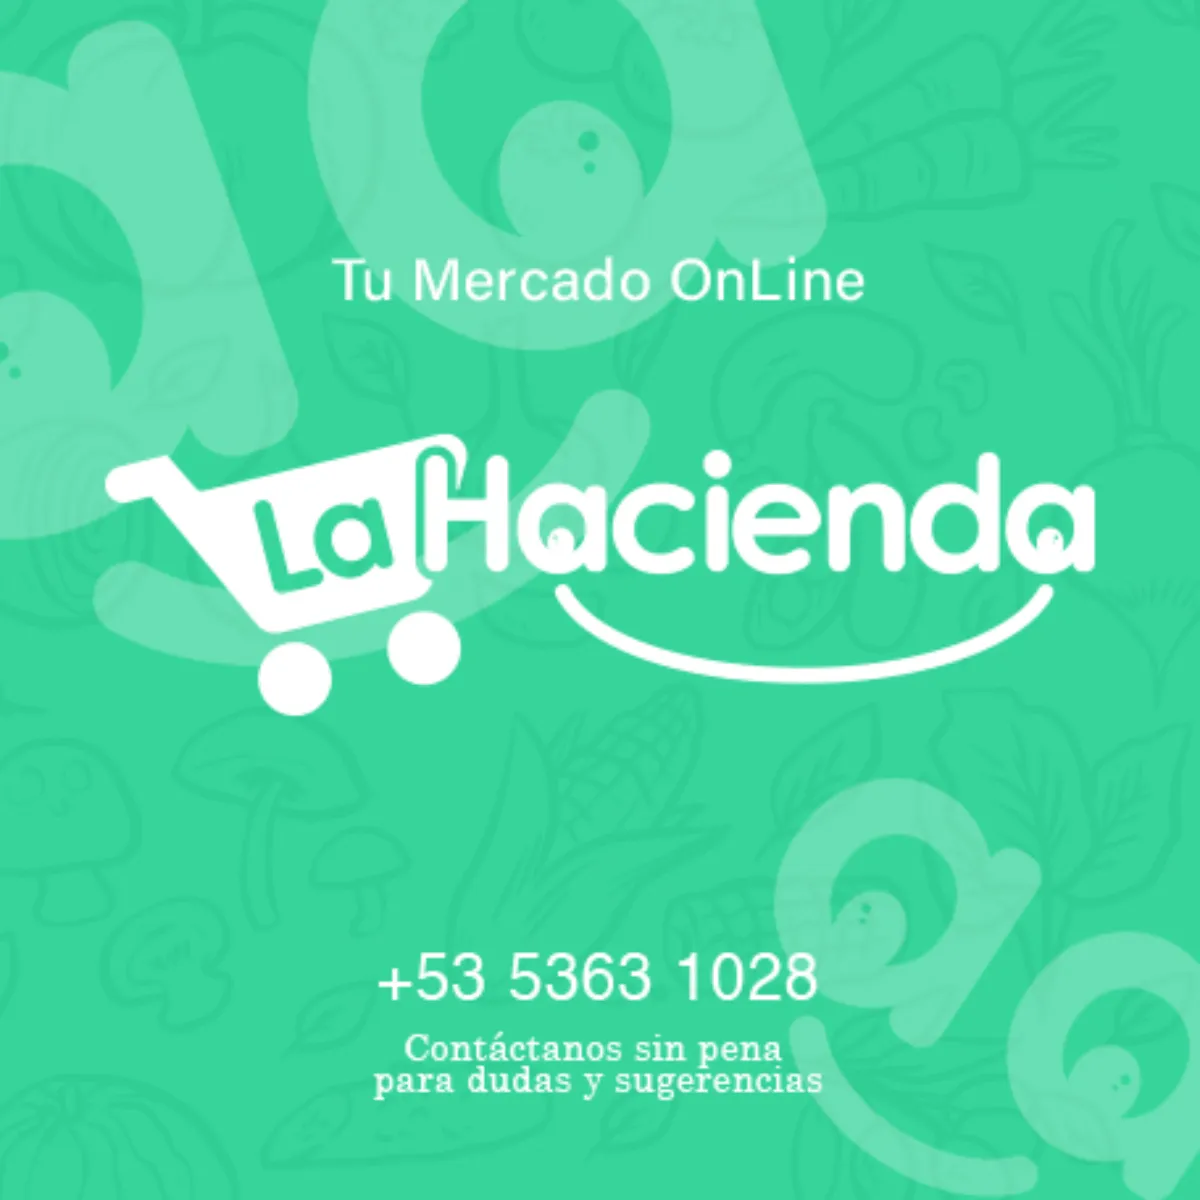 Mercado Online La Hacienda